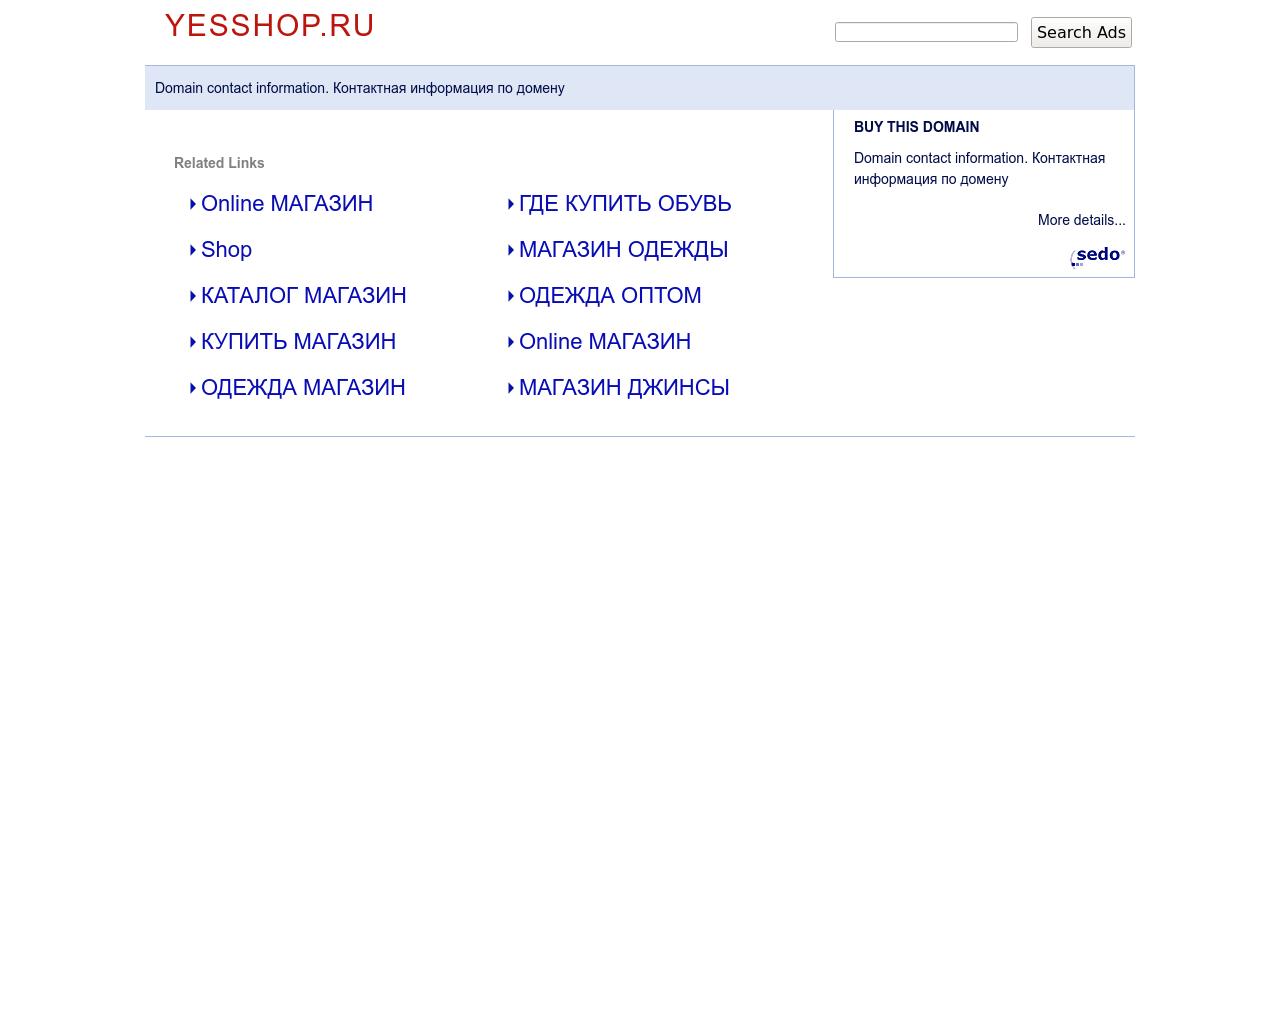 Изображение сайта yesshop.ru в разрешении 1280x1024